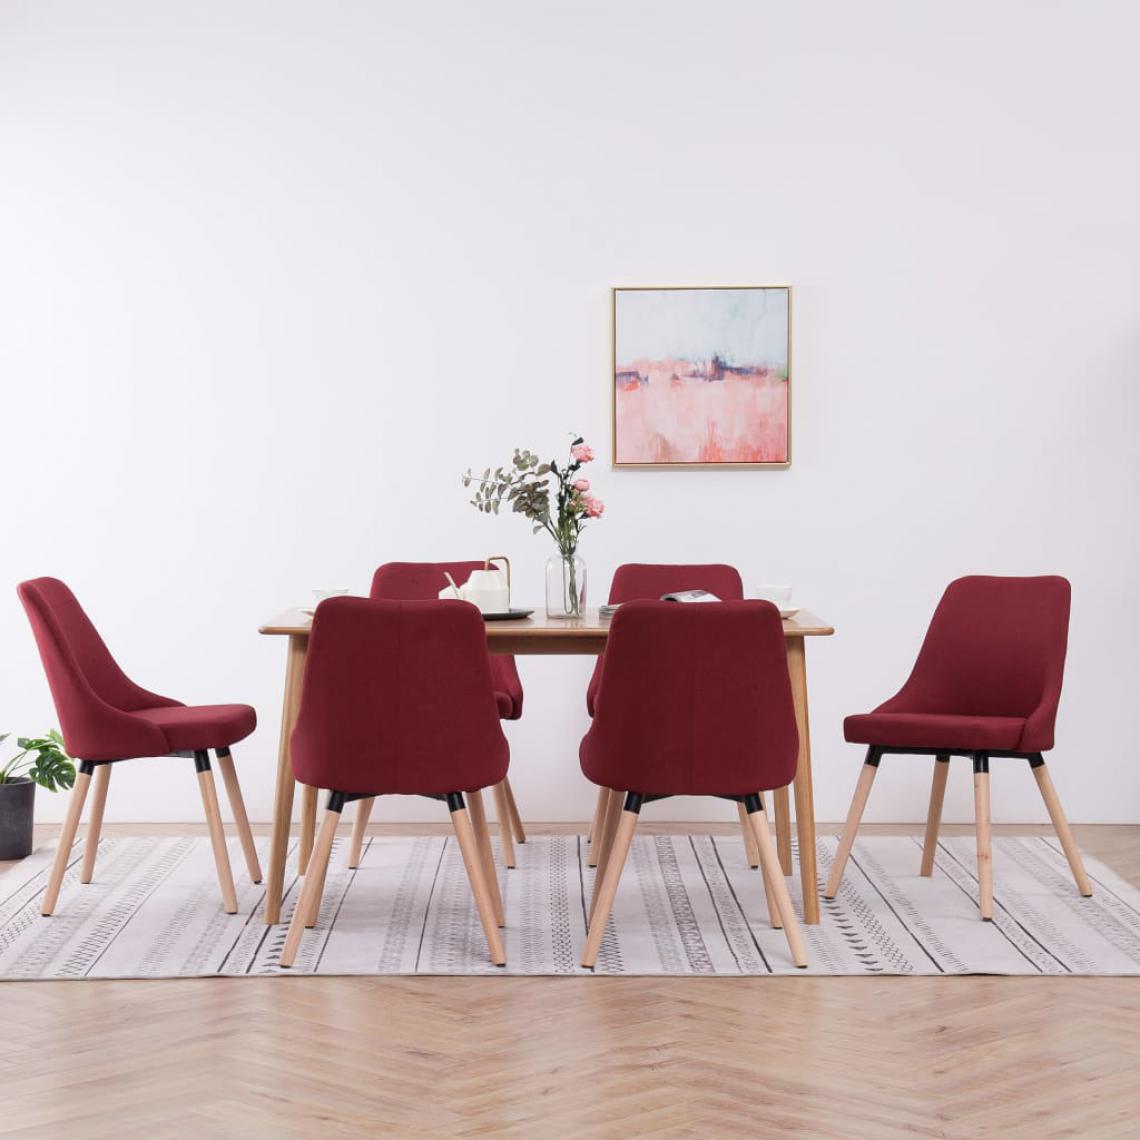 Icaverne - sublime Fauteuils et chaises gamme Tachkent Chaises de salle à manger 6 pcs Rouge bordeaux Tissu - Chaises